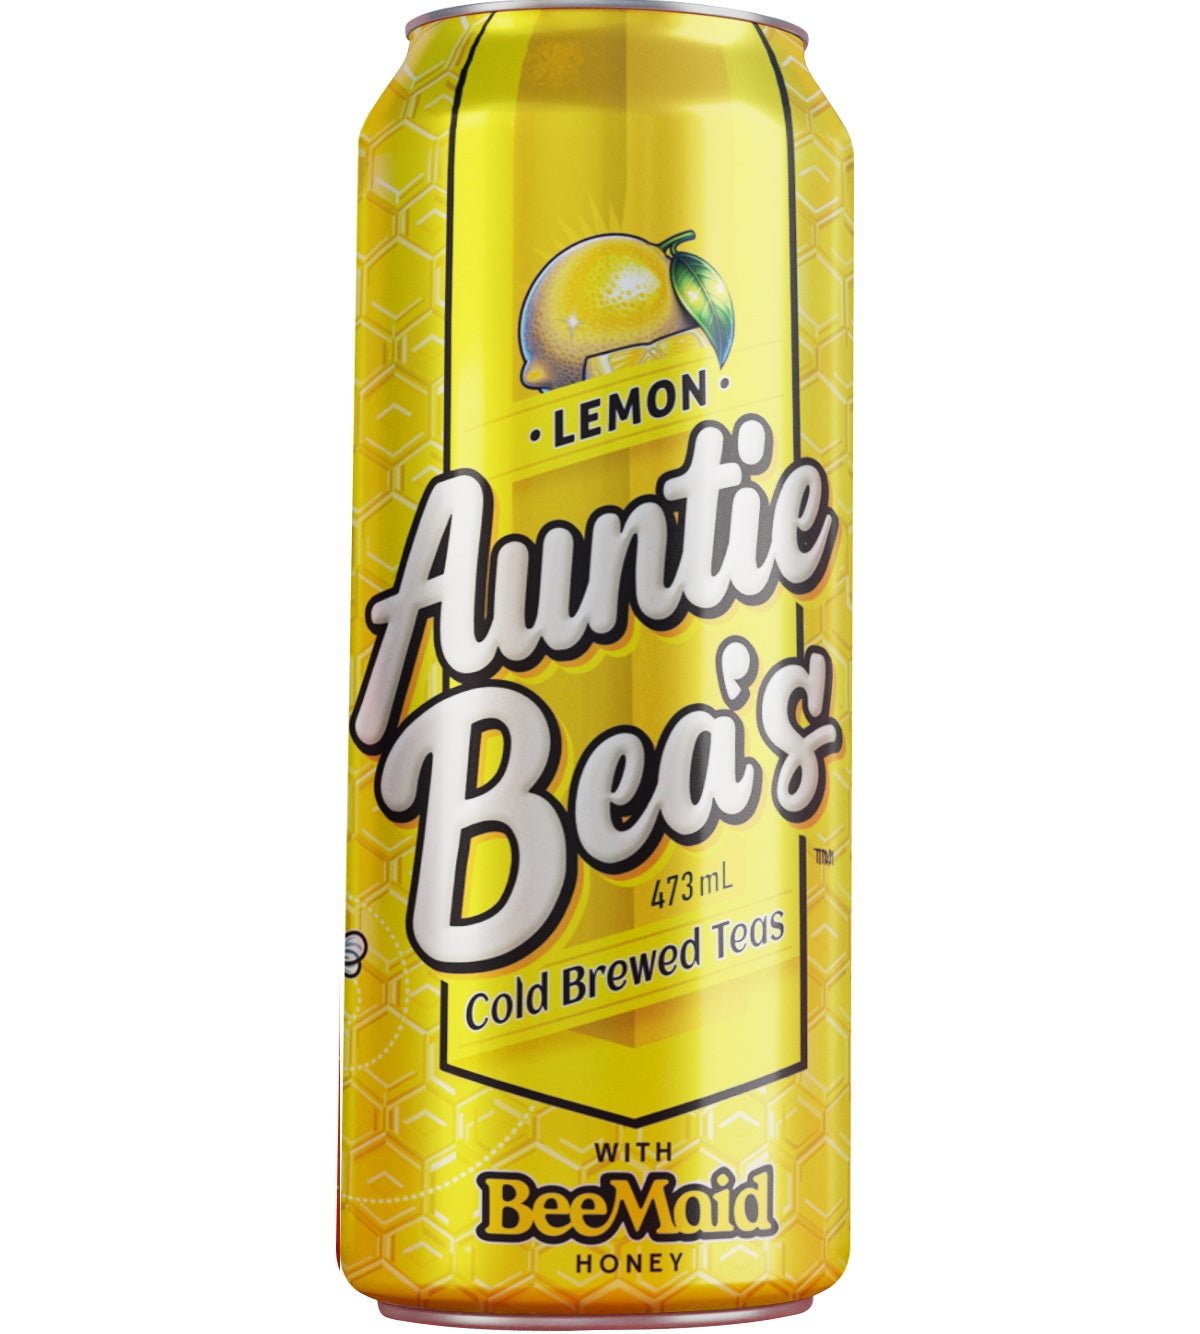 Auntie Bea's Cold Brewed Teas LEMON - 473ml - Farmery Estate Brewing Company Inc.-non alc